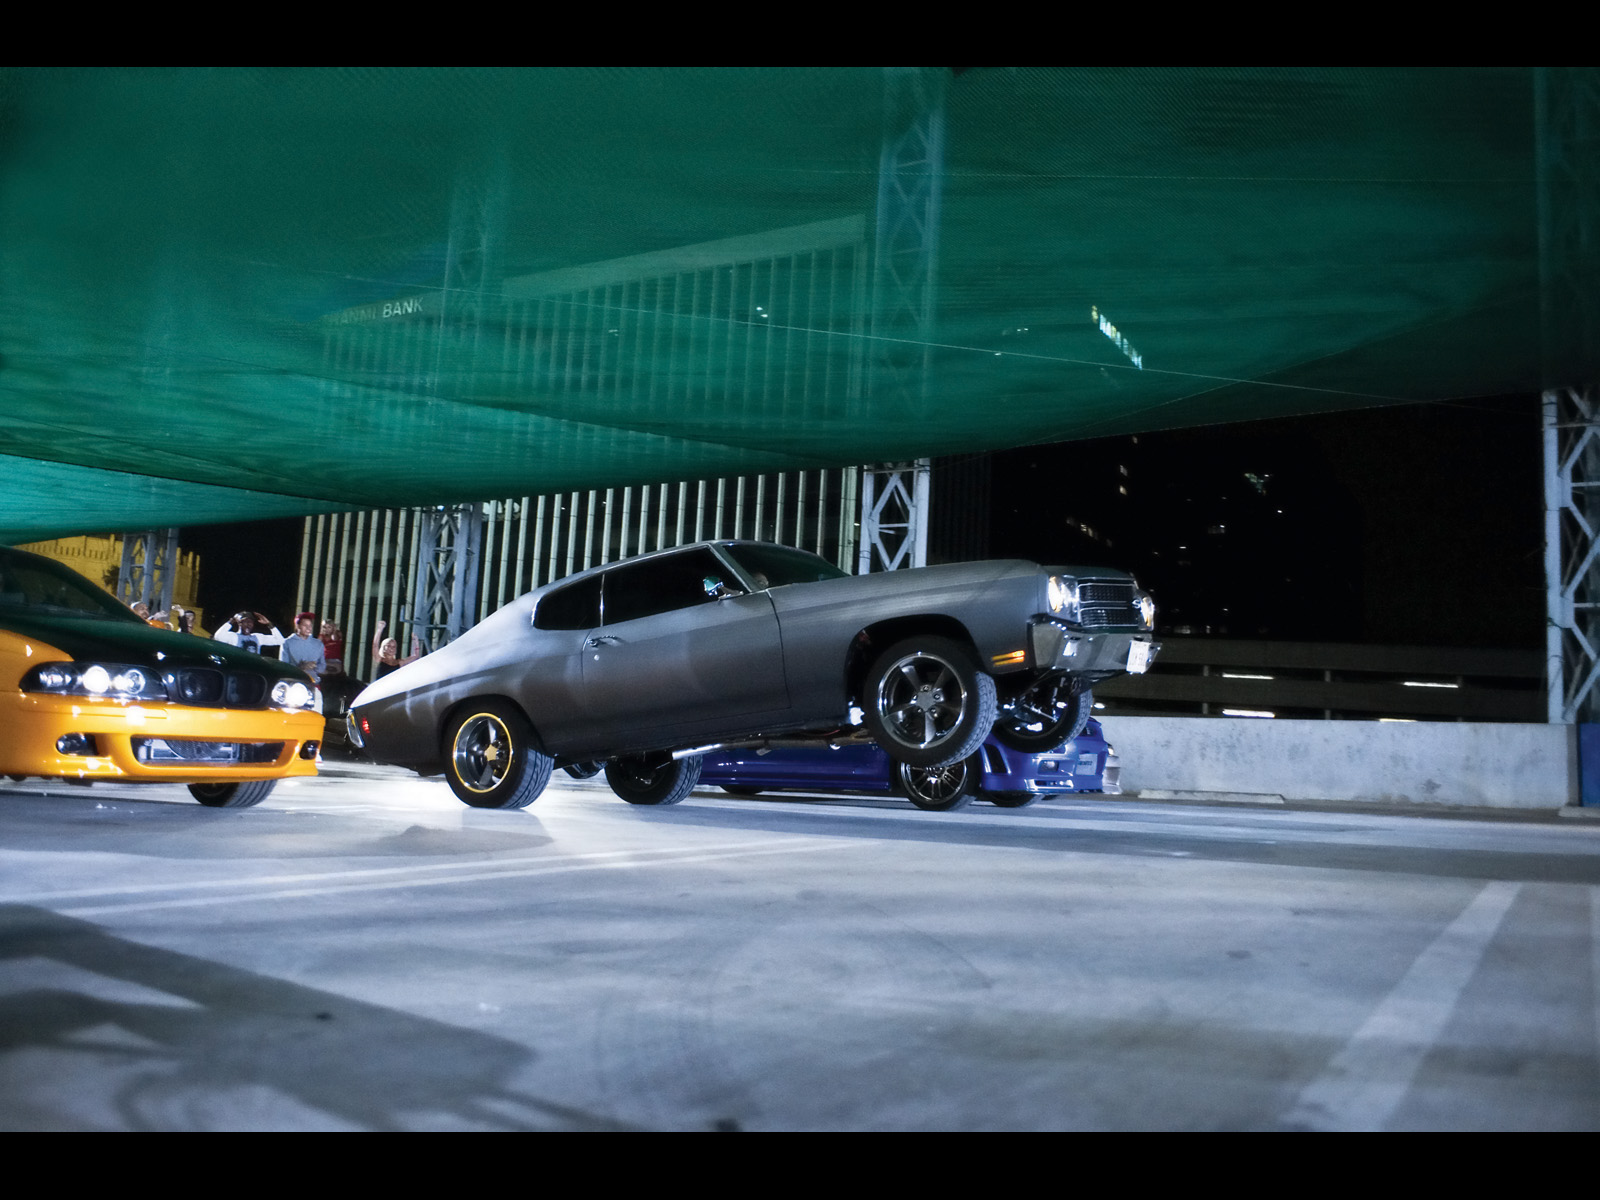 Fast Furious Movie Cars   Chevelle Wheelie   1600x1200   Wallpaper